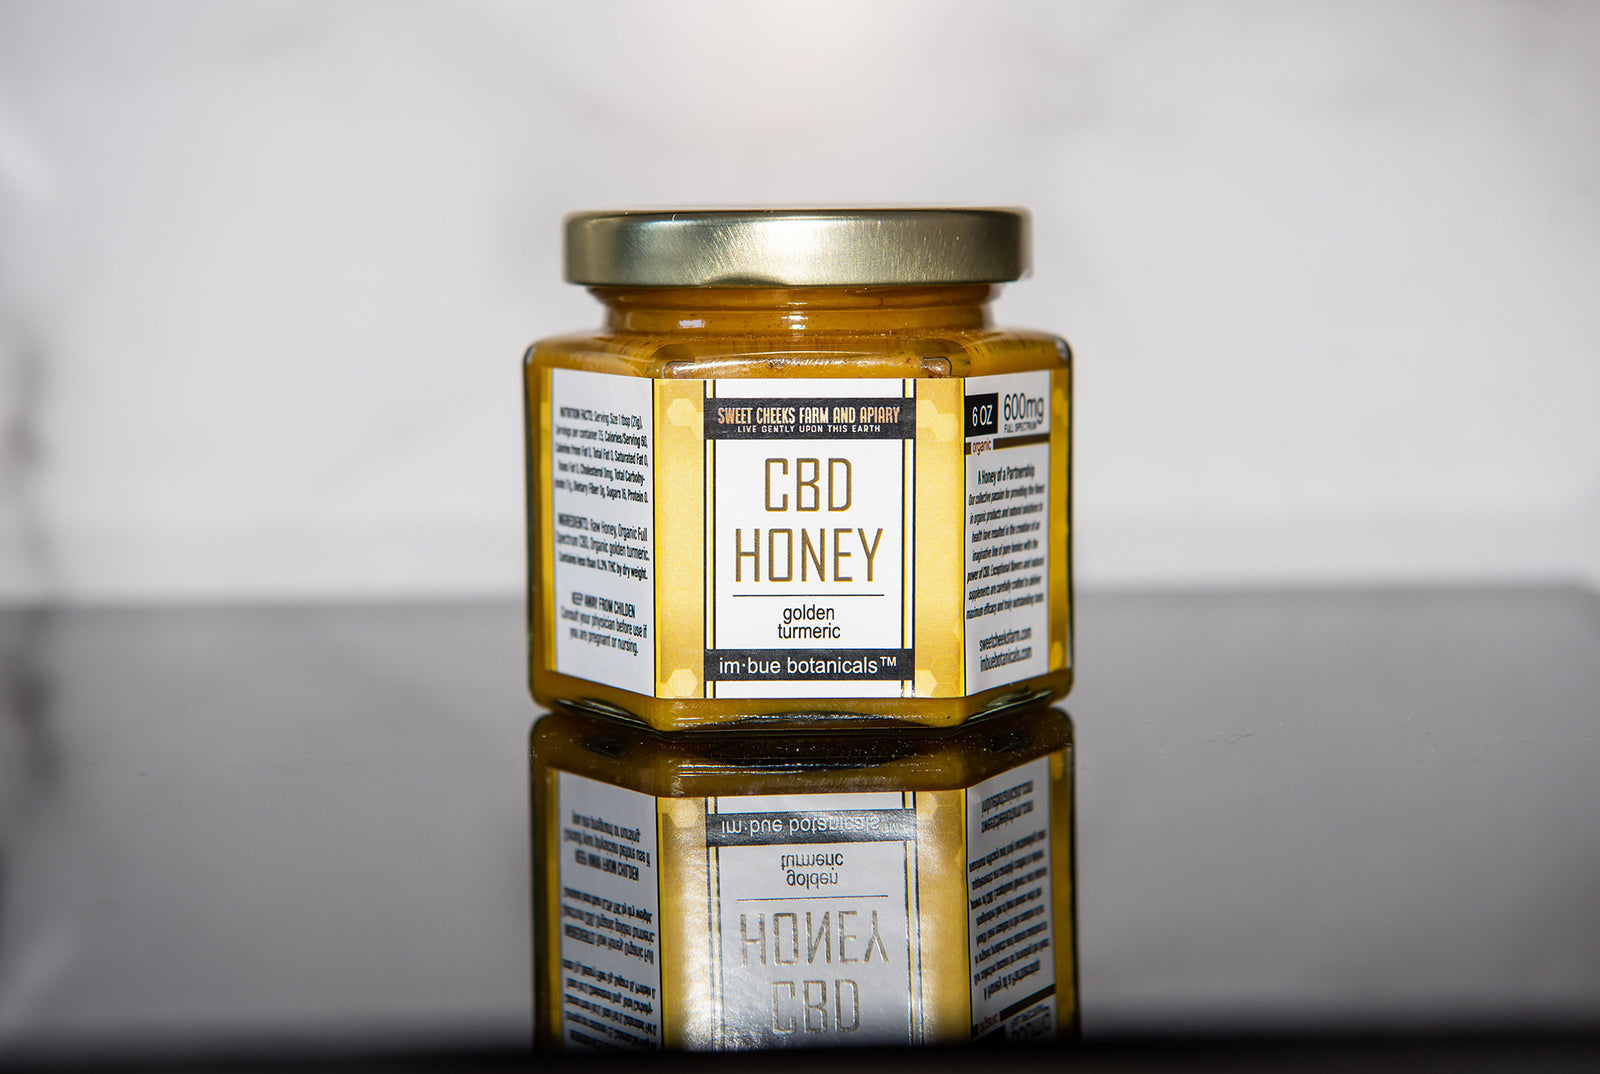 Honey Comb (12 oz)